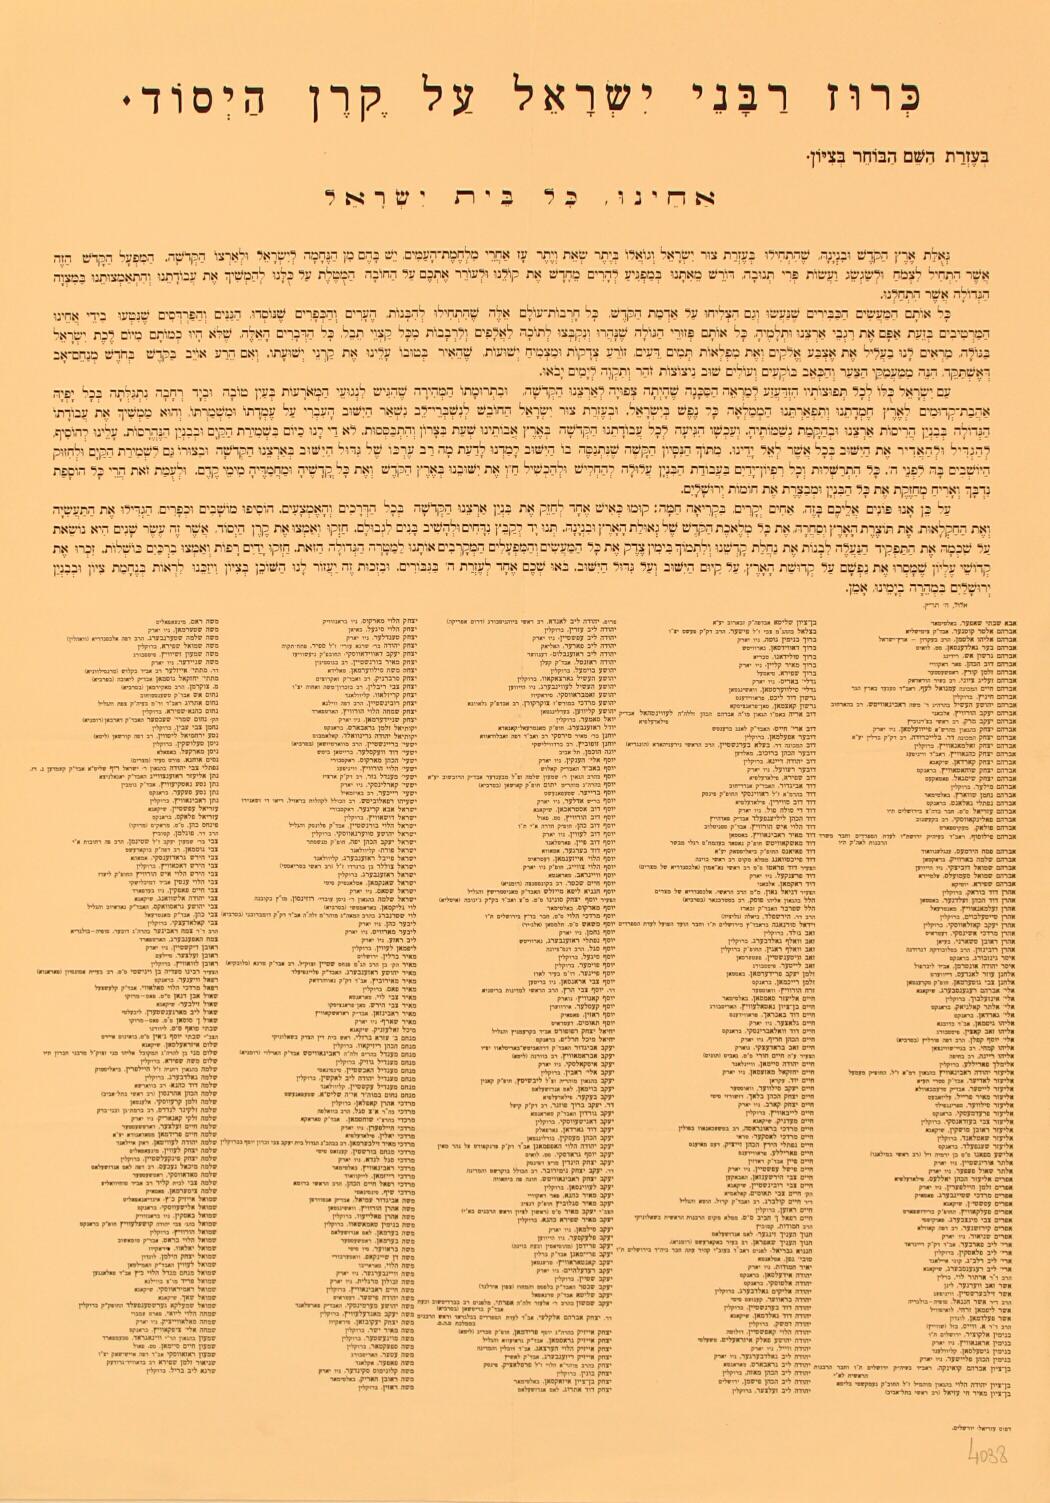 La proclamation des 500 rabbins distribuée en 1939, appelant à soutenir les activités du Keren Hayessod